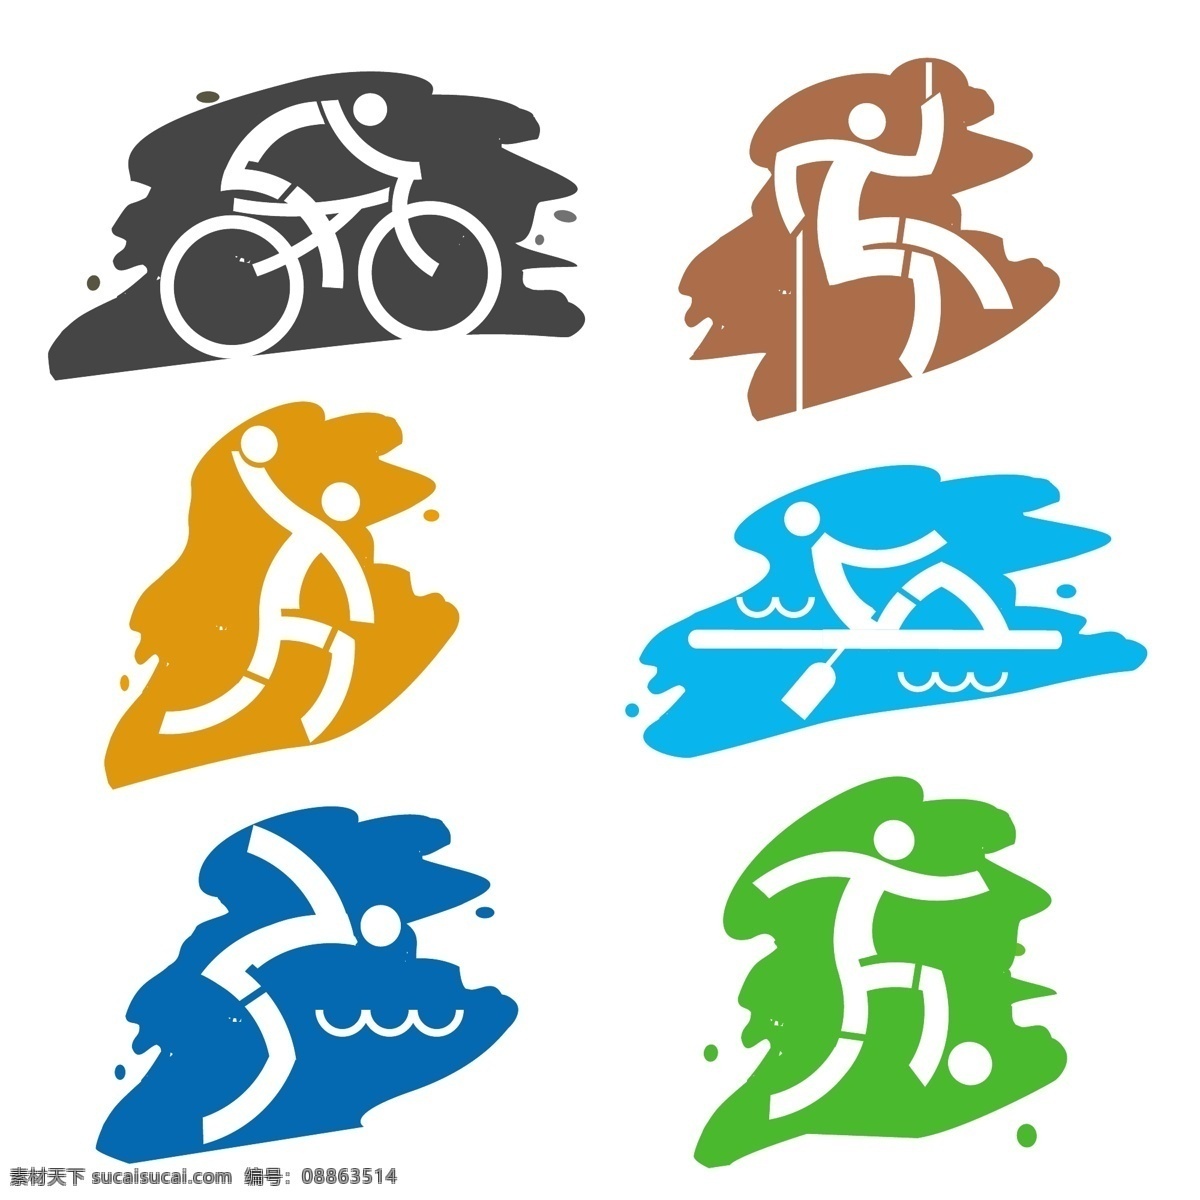 体育运动图标 体育图标 运动图标 体育运动 logo 体育运动标志 运动会 竞赛 体育比赛